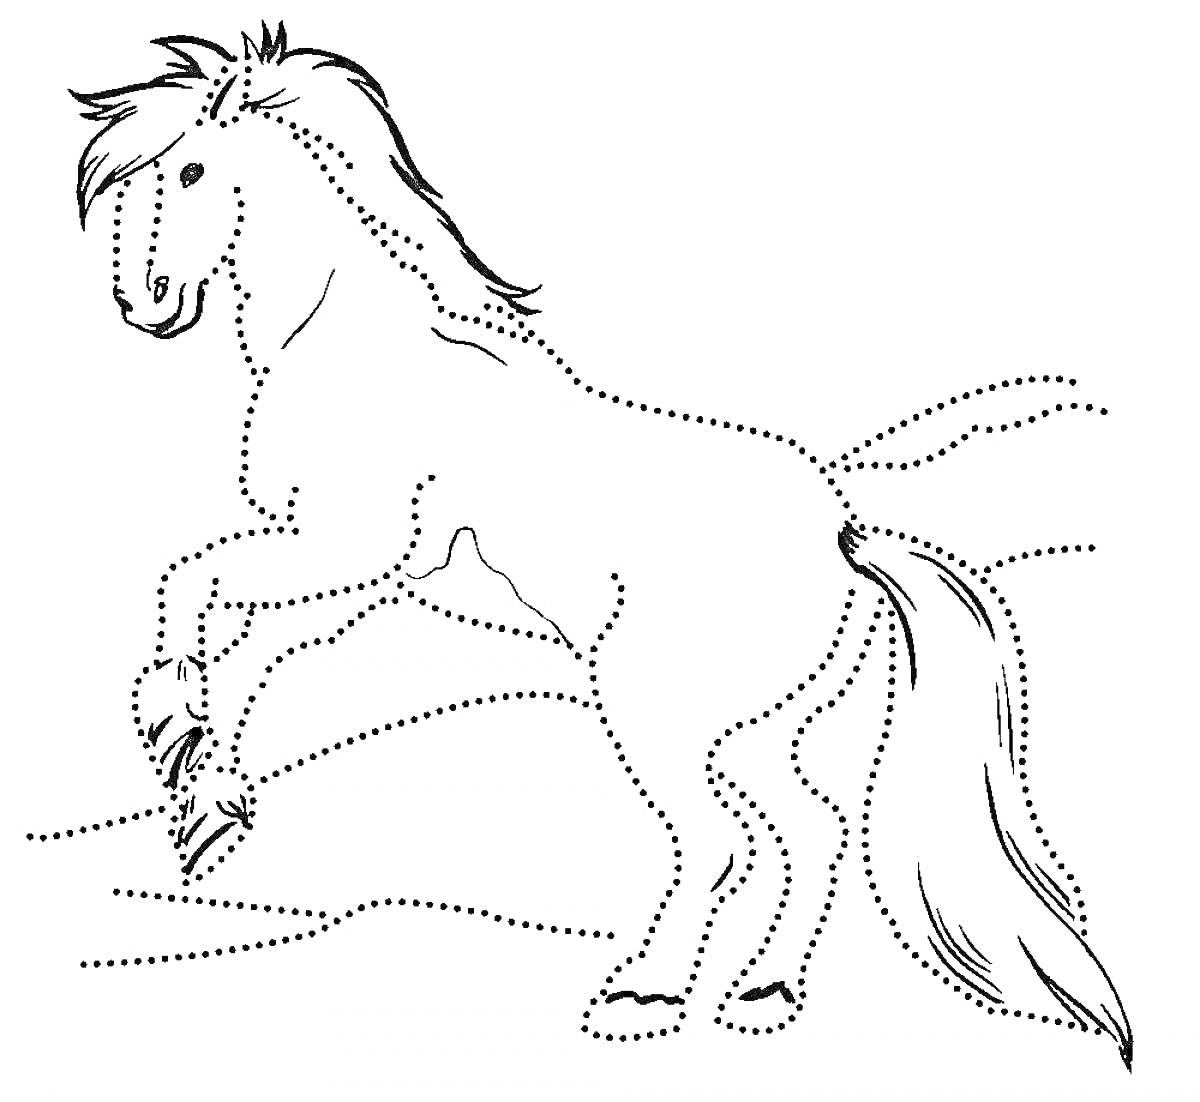 Раскраска Пунктирный контур сказочного коня Сивки-Бурки на фоне поля